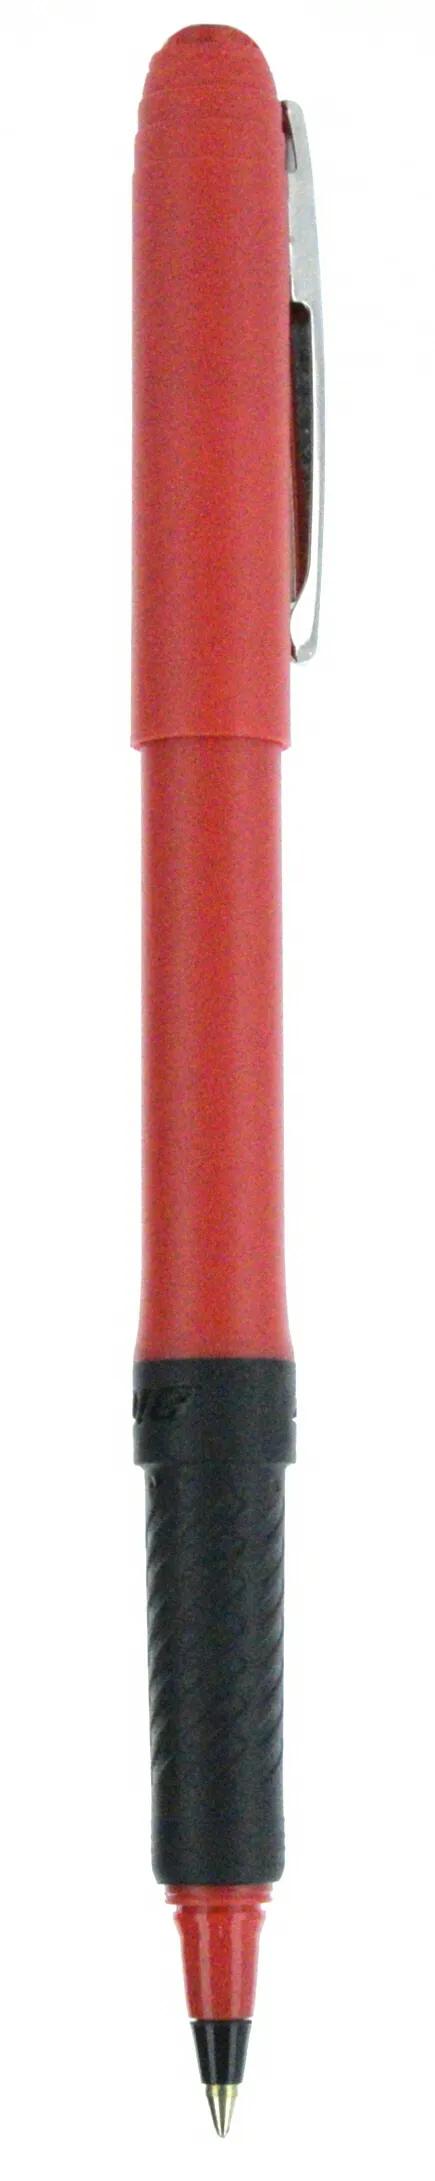 BIC® Grip Roller Pen 144 of 147